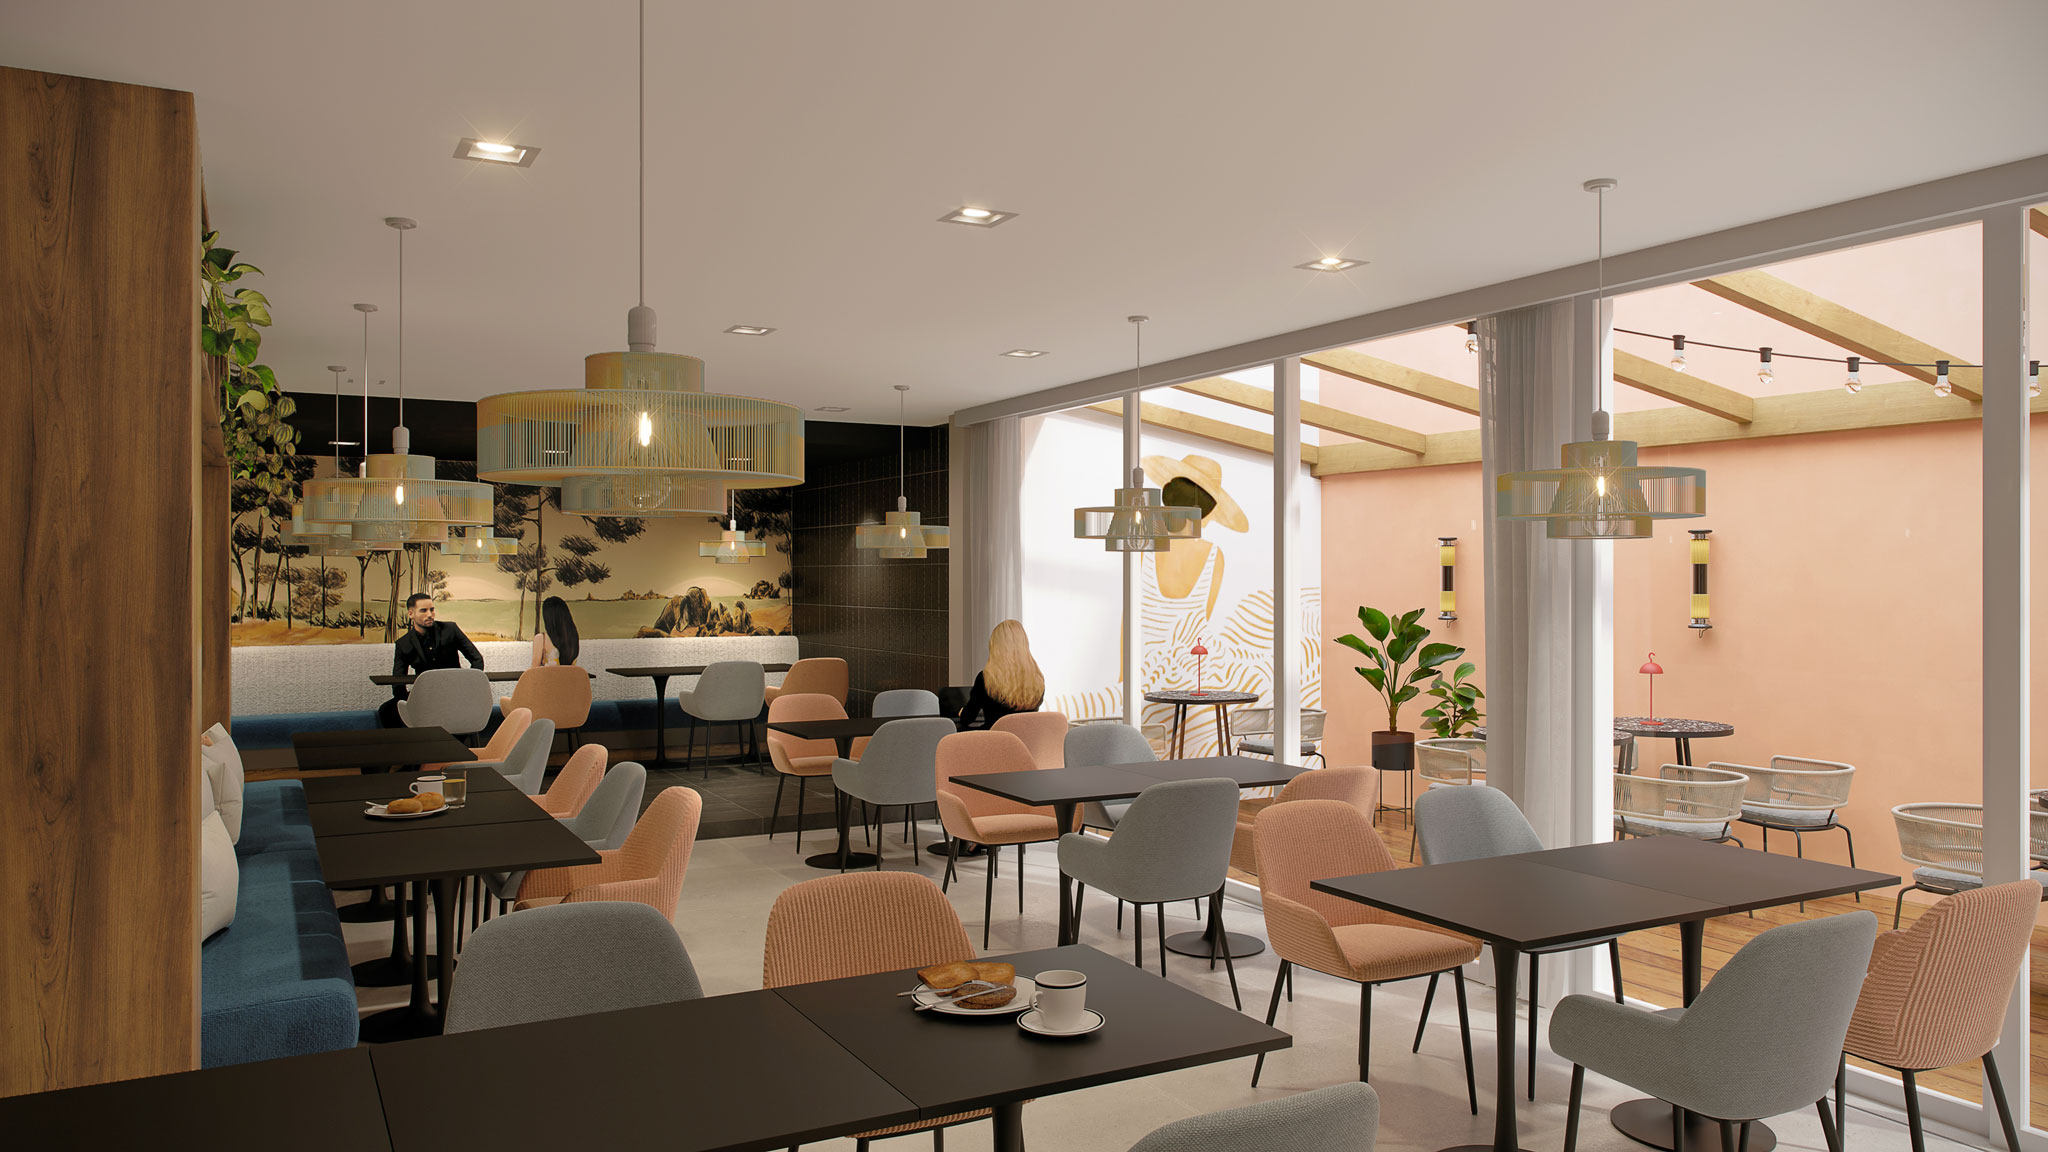 Projet de décoration d'intérieur et d'étude marketing pour le projet concours de l'hôtel Mercure Biarritz Plage.